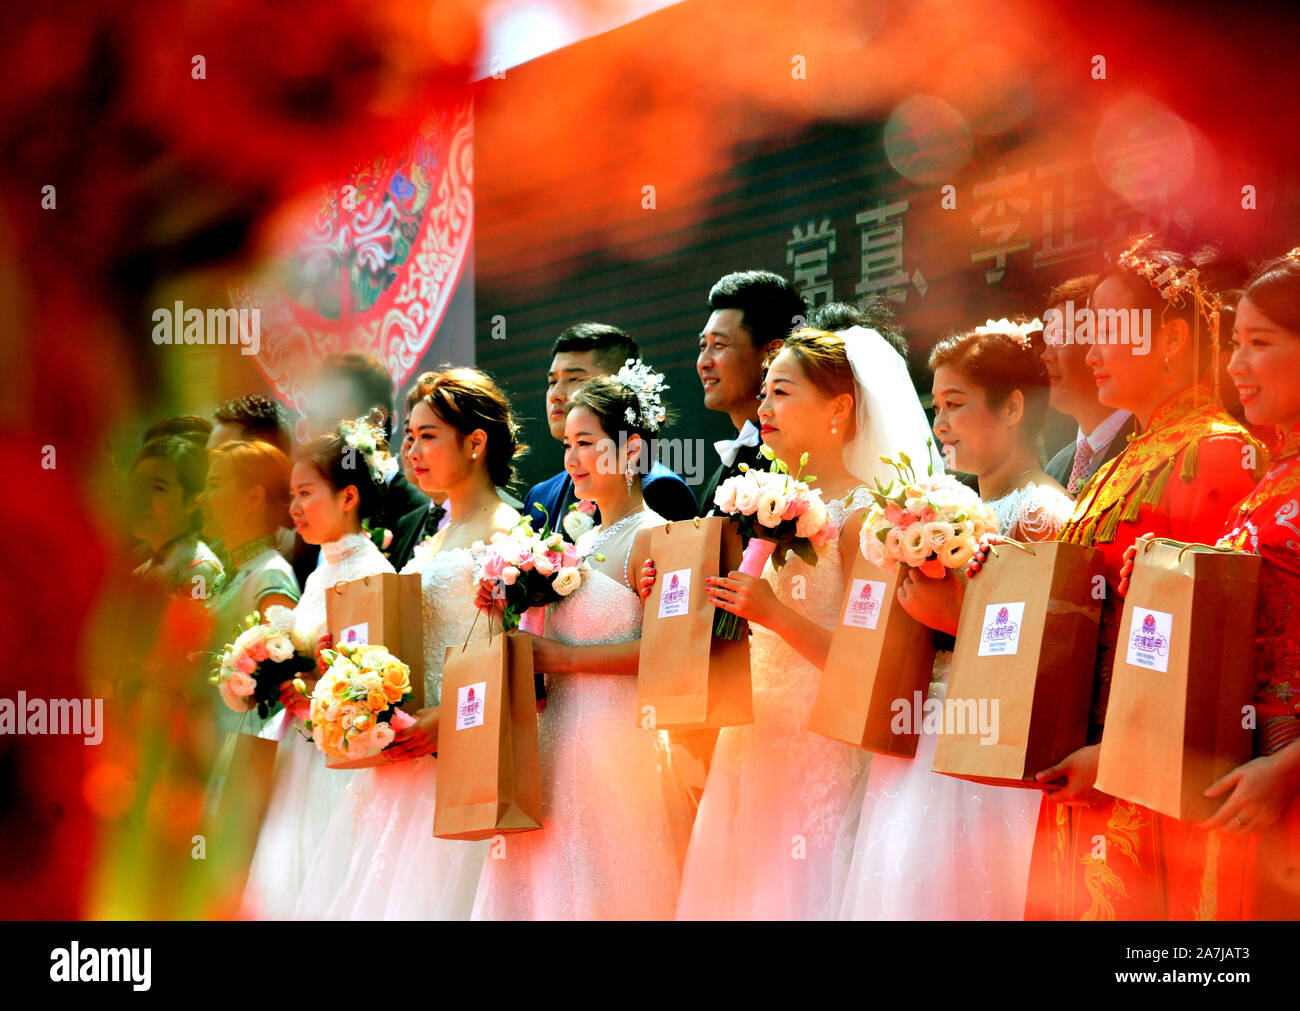 15 coppie di sposi novelli a un matrimonio di gruppo ti celebrare il settantesimo anniversario della fondazione della Repubblica a Shanghai in Cina, 19 settembre 2019. Foto Stock